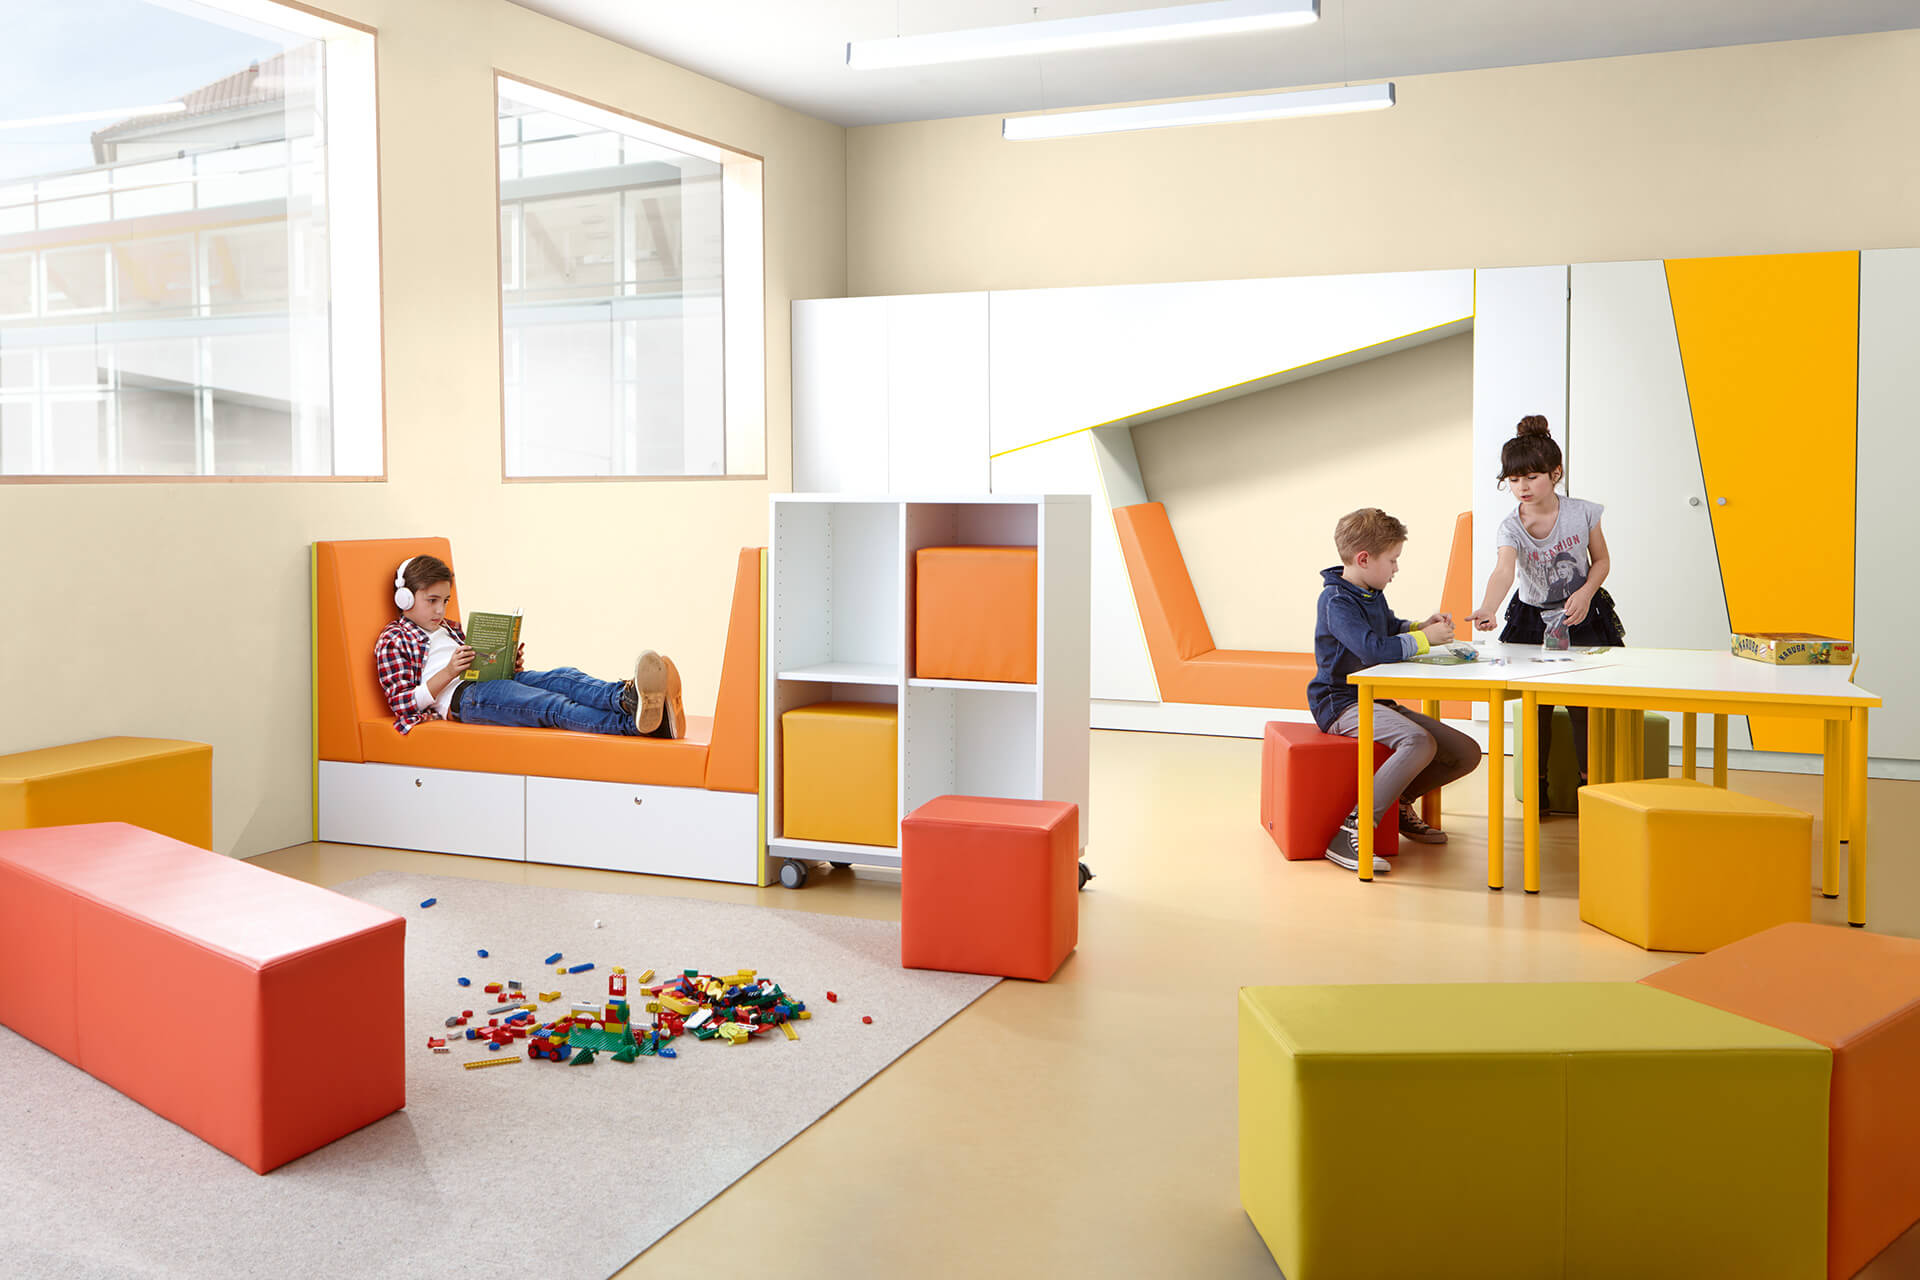 Schule & Hort |Aufenthaltsräume | Raum eingerichtet mit orange gelb, grünen Sitzmöbeln Kind sitzt am Tisch